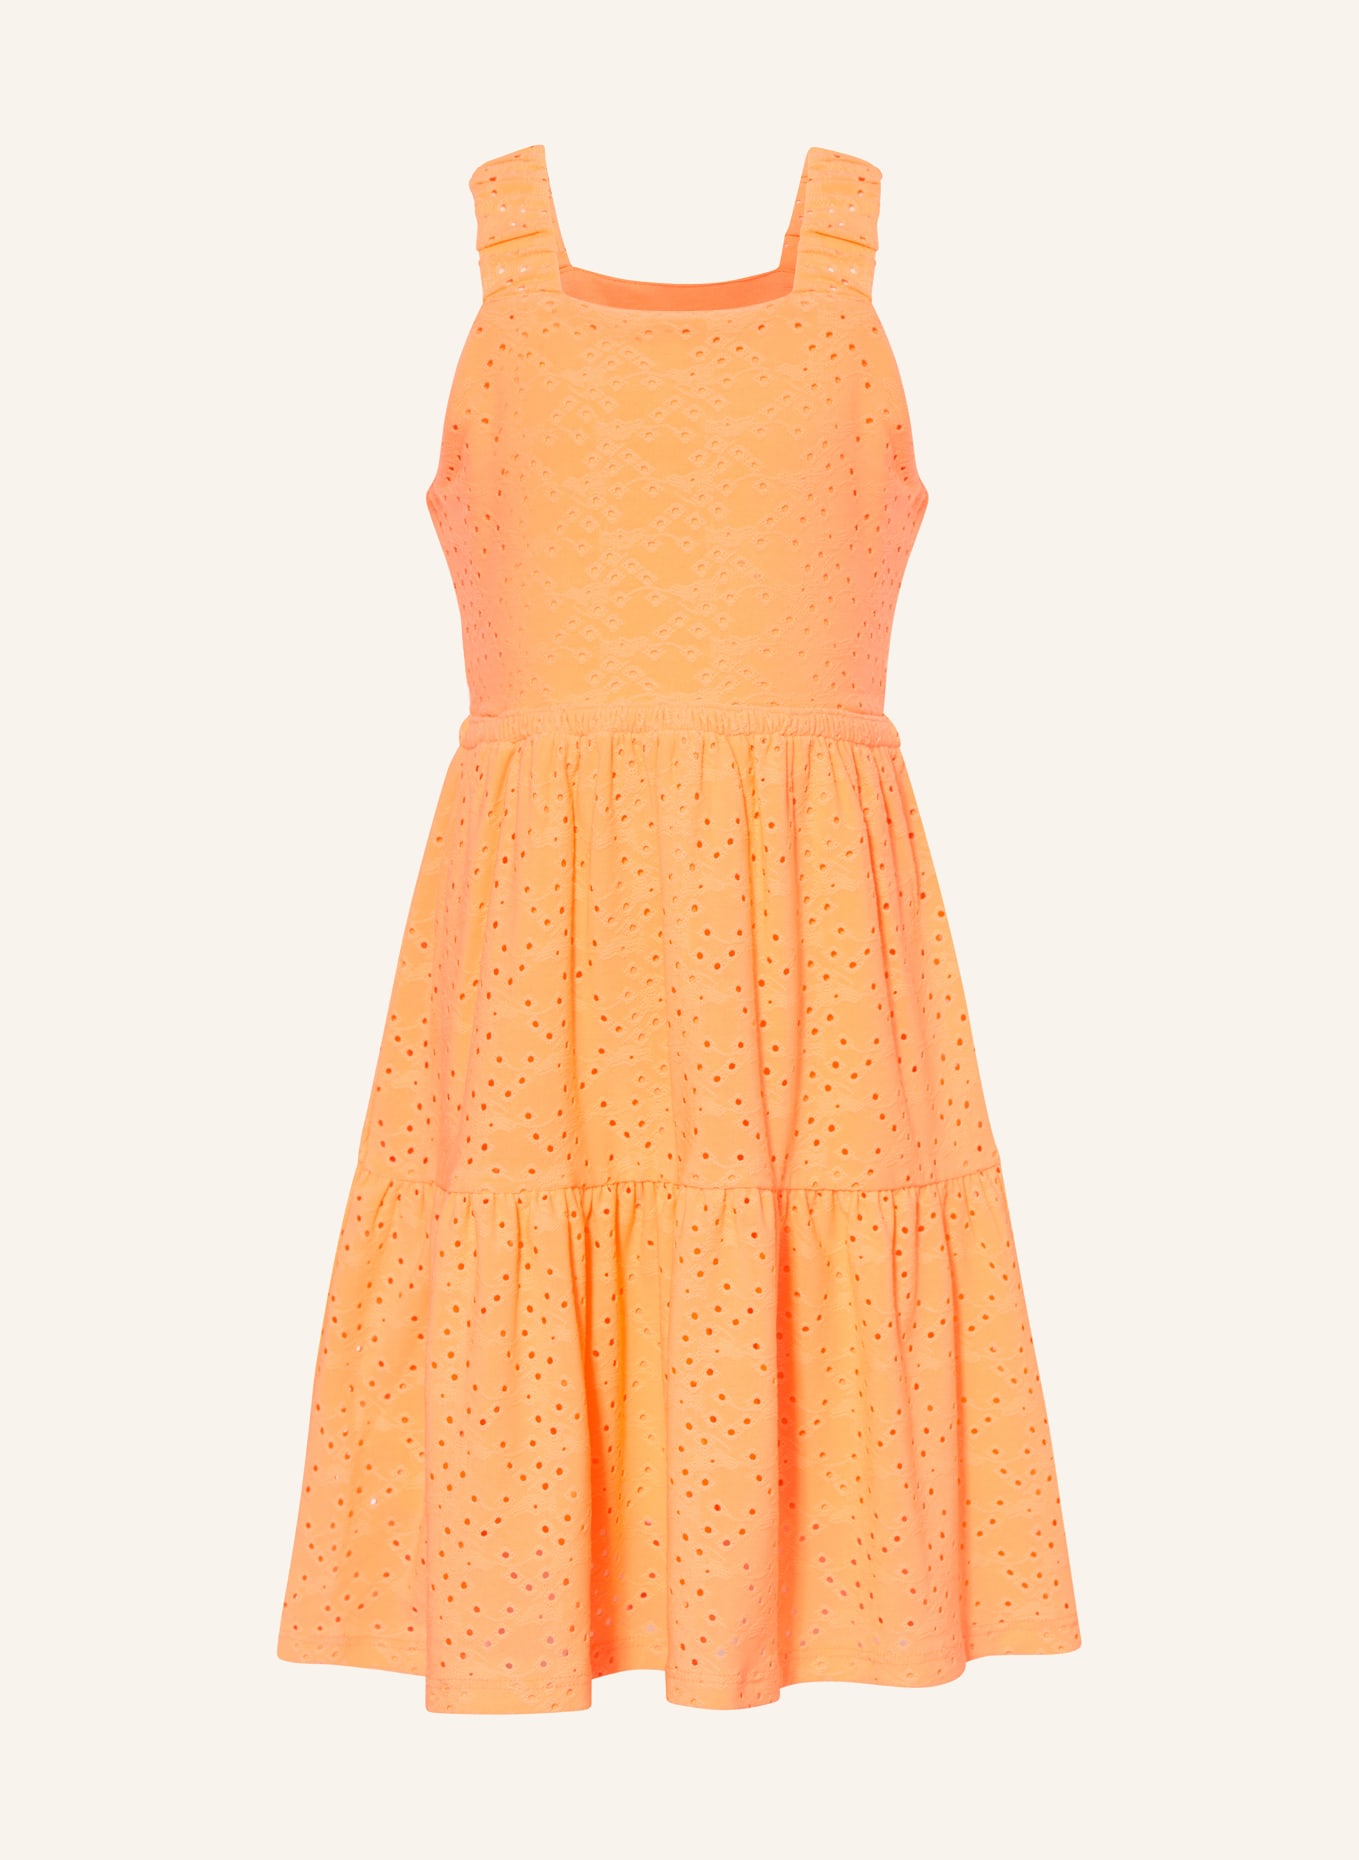 GARCIA Kleid aus Lochspitze, Farbe: NEONORANGE (Bild 1)